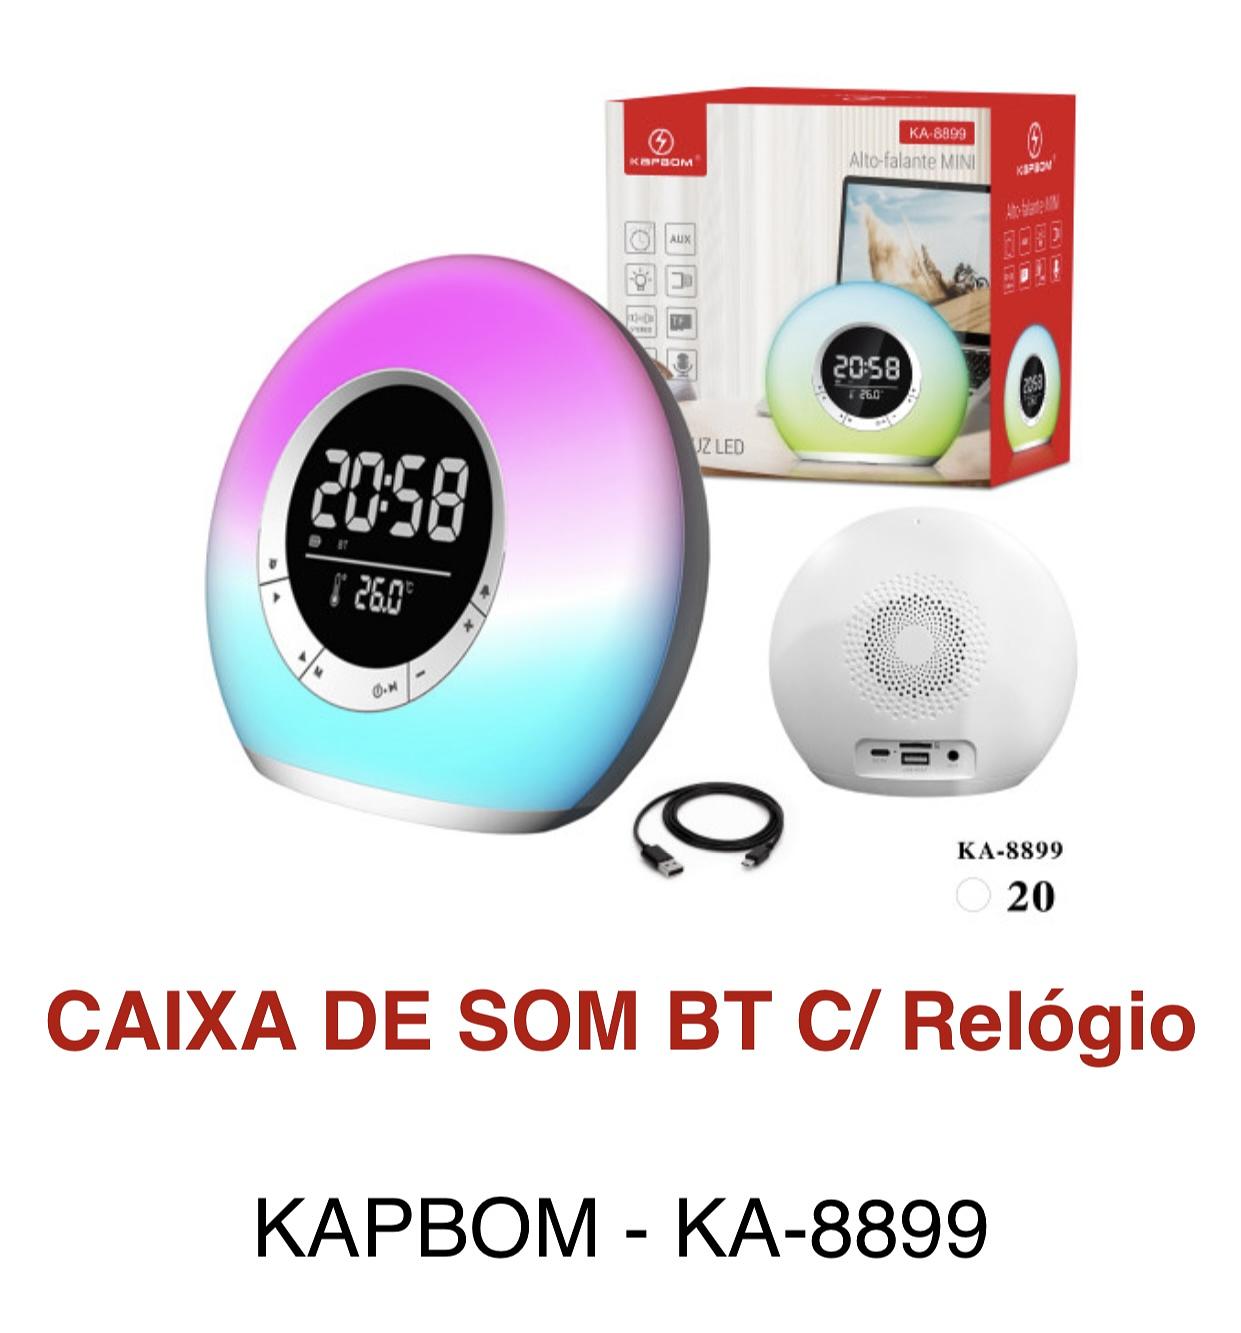 Caixa de som com led , Bluetooth relógio e rádio am fm KA-8899